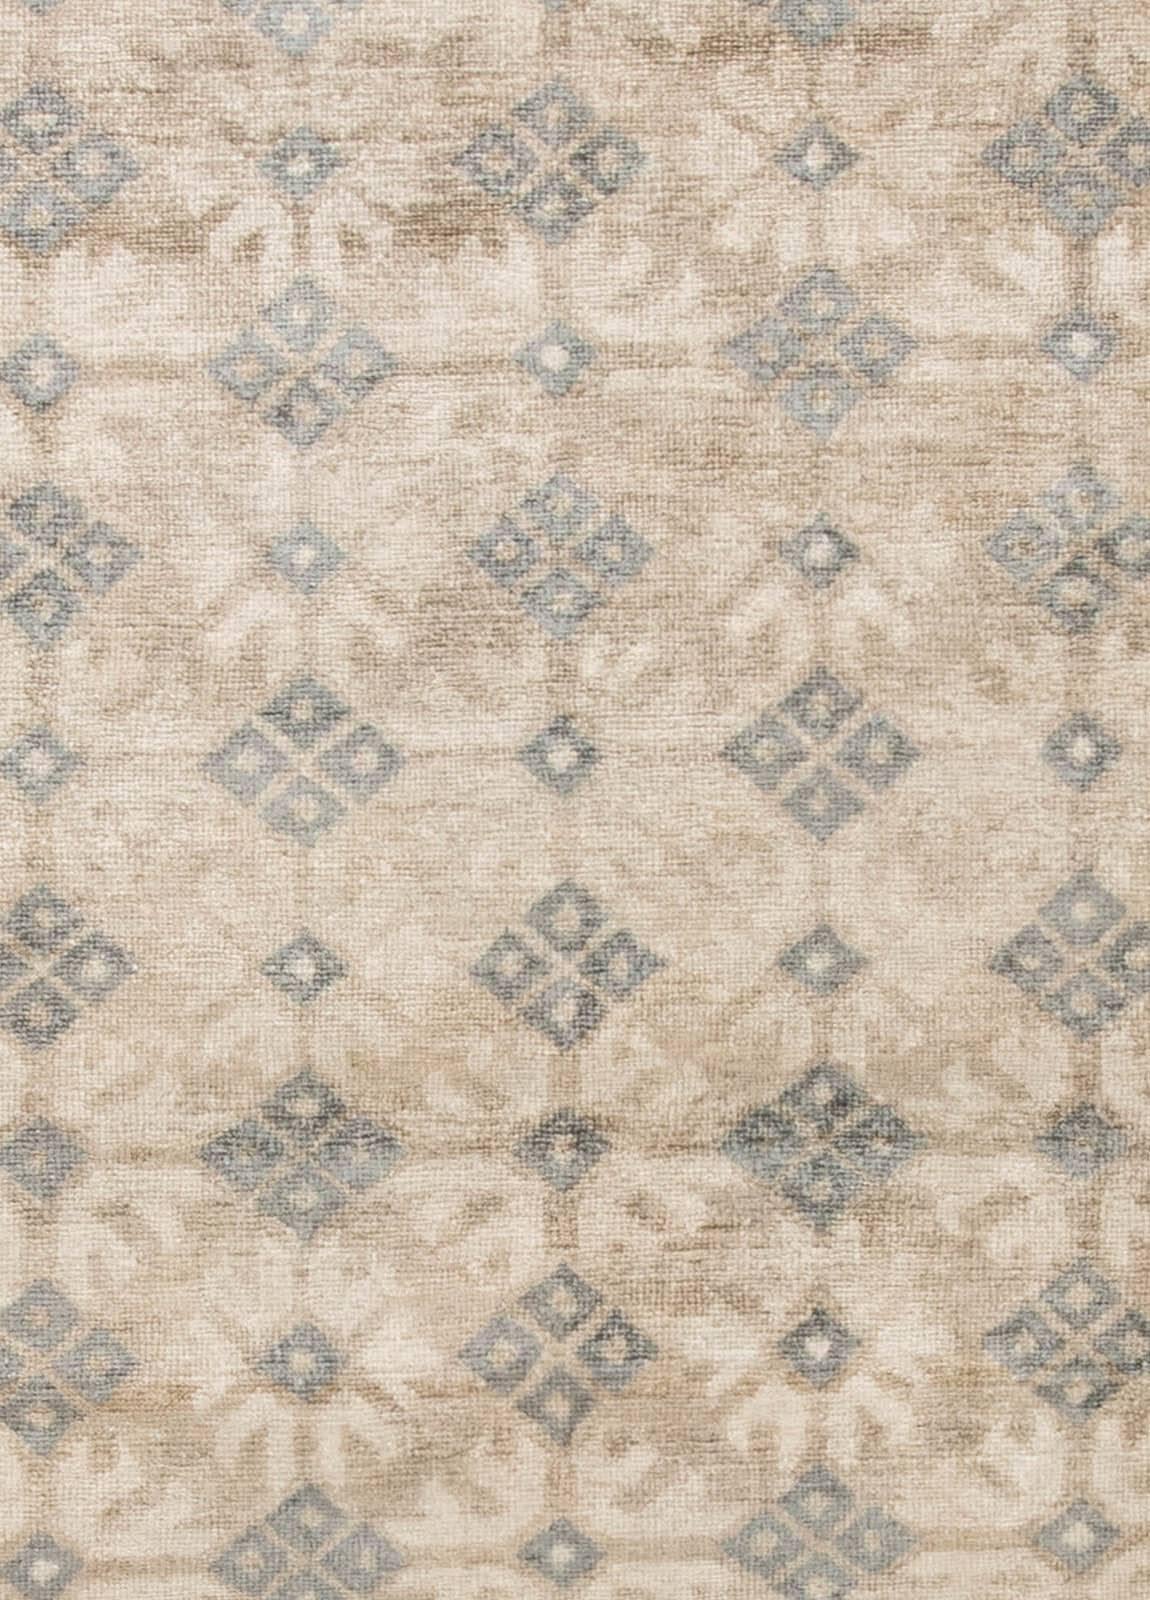 Zeitgenössischer traditioneller orientalisch inspirierter Samarkand-Teppich von Doris Leslie Blau.
Größe: 12'5